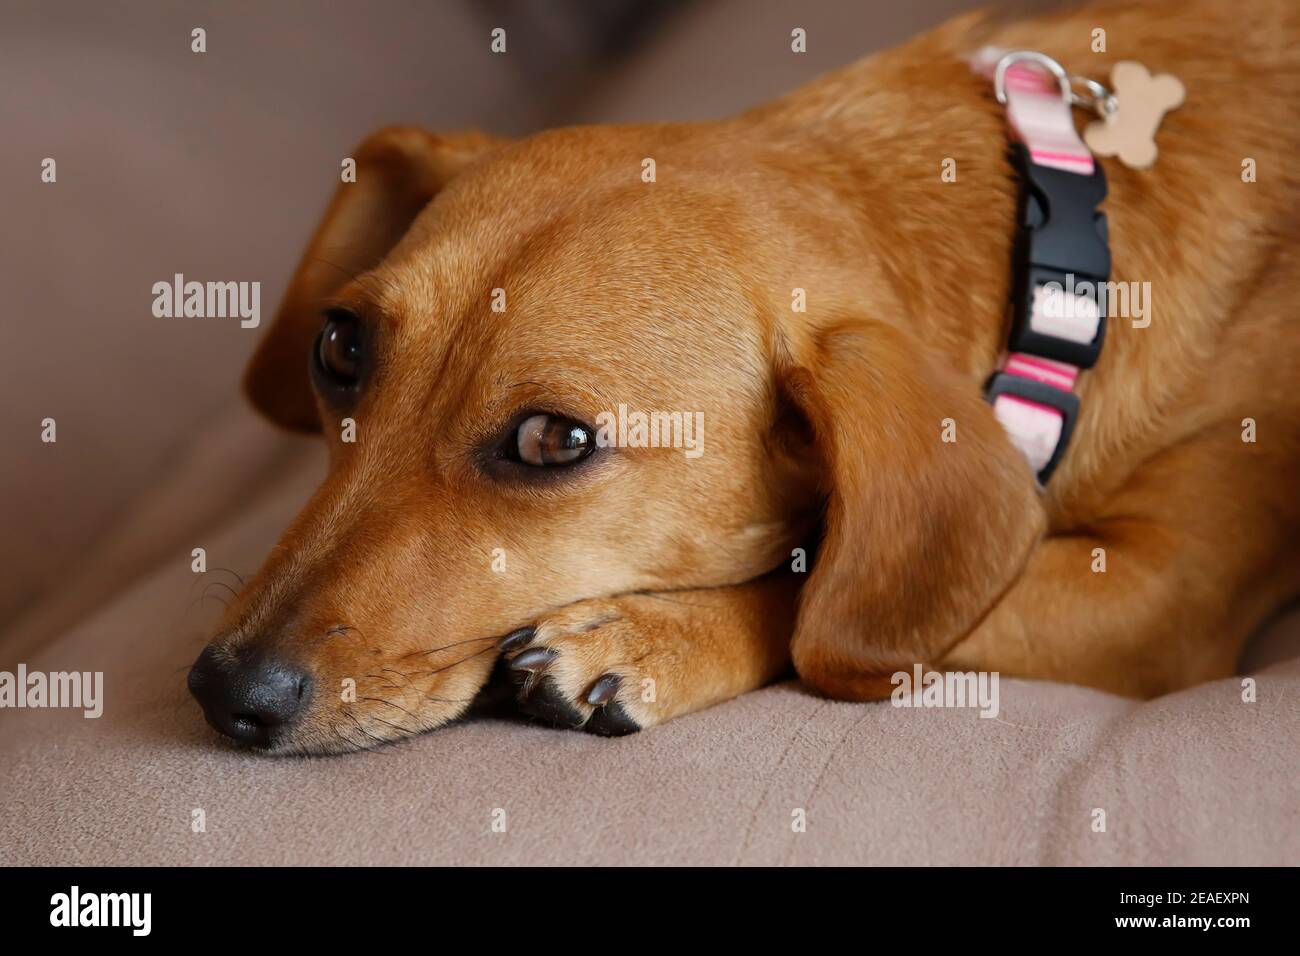 pequeño animal dachshund cachorro acostado y tranquilo en color amarillo y raza mixta Foto de stock